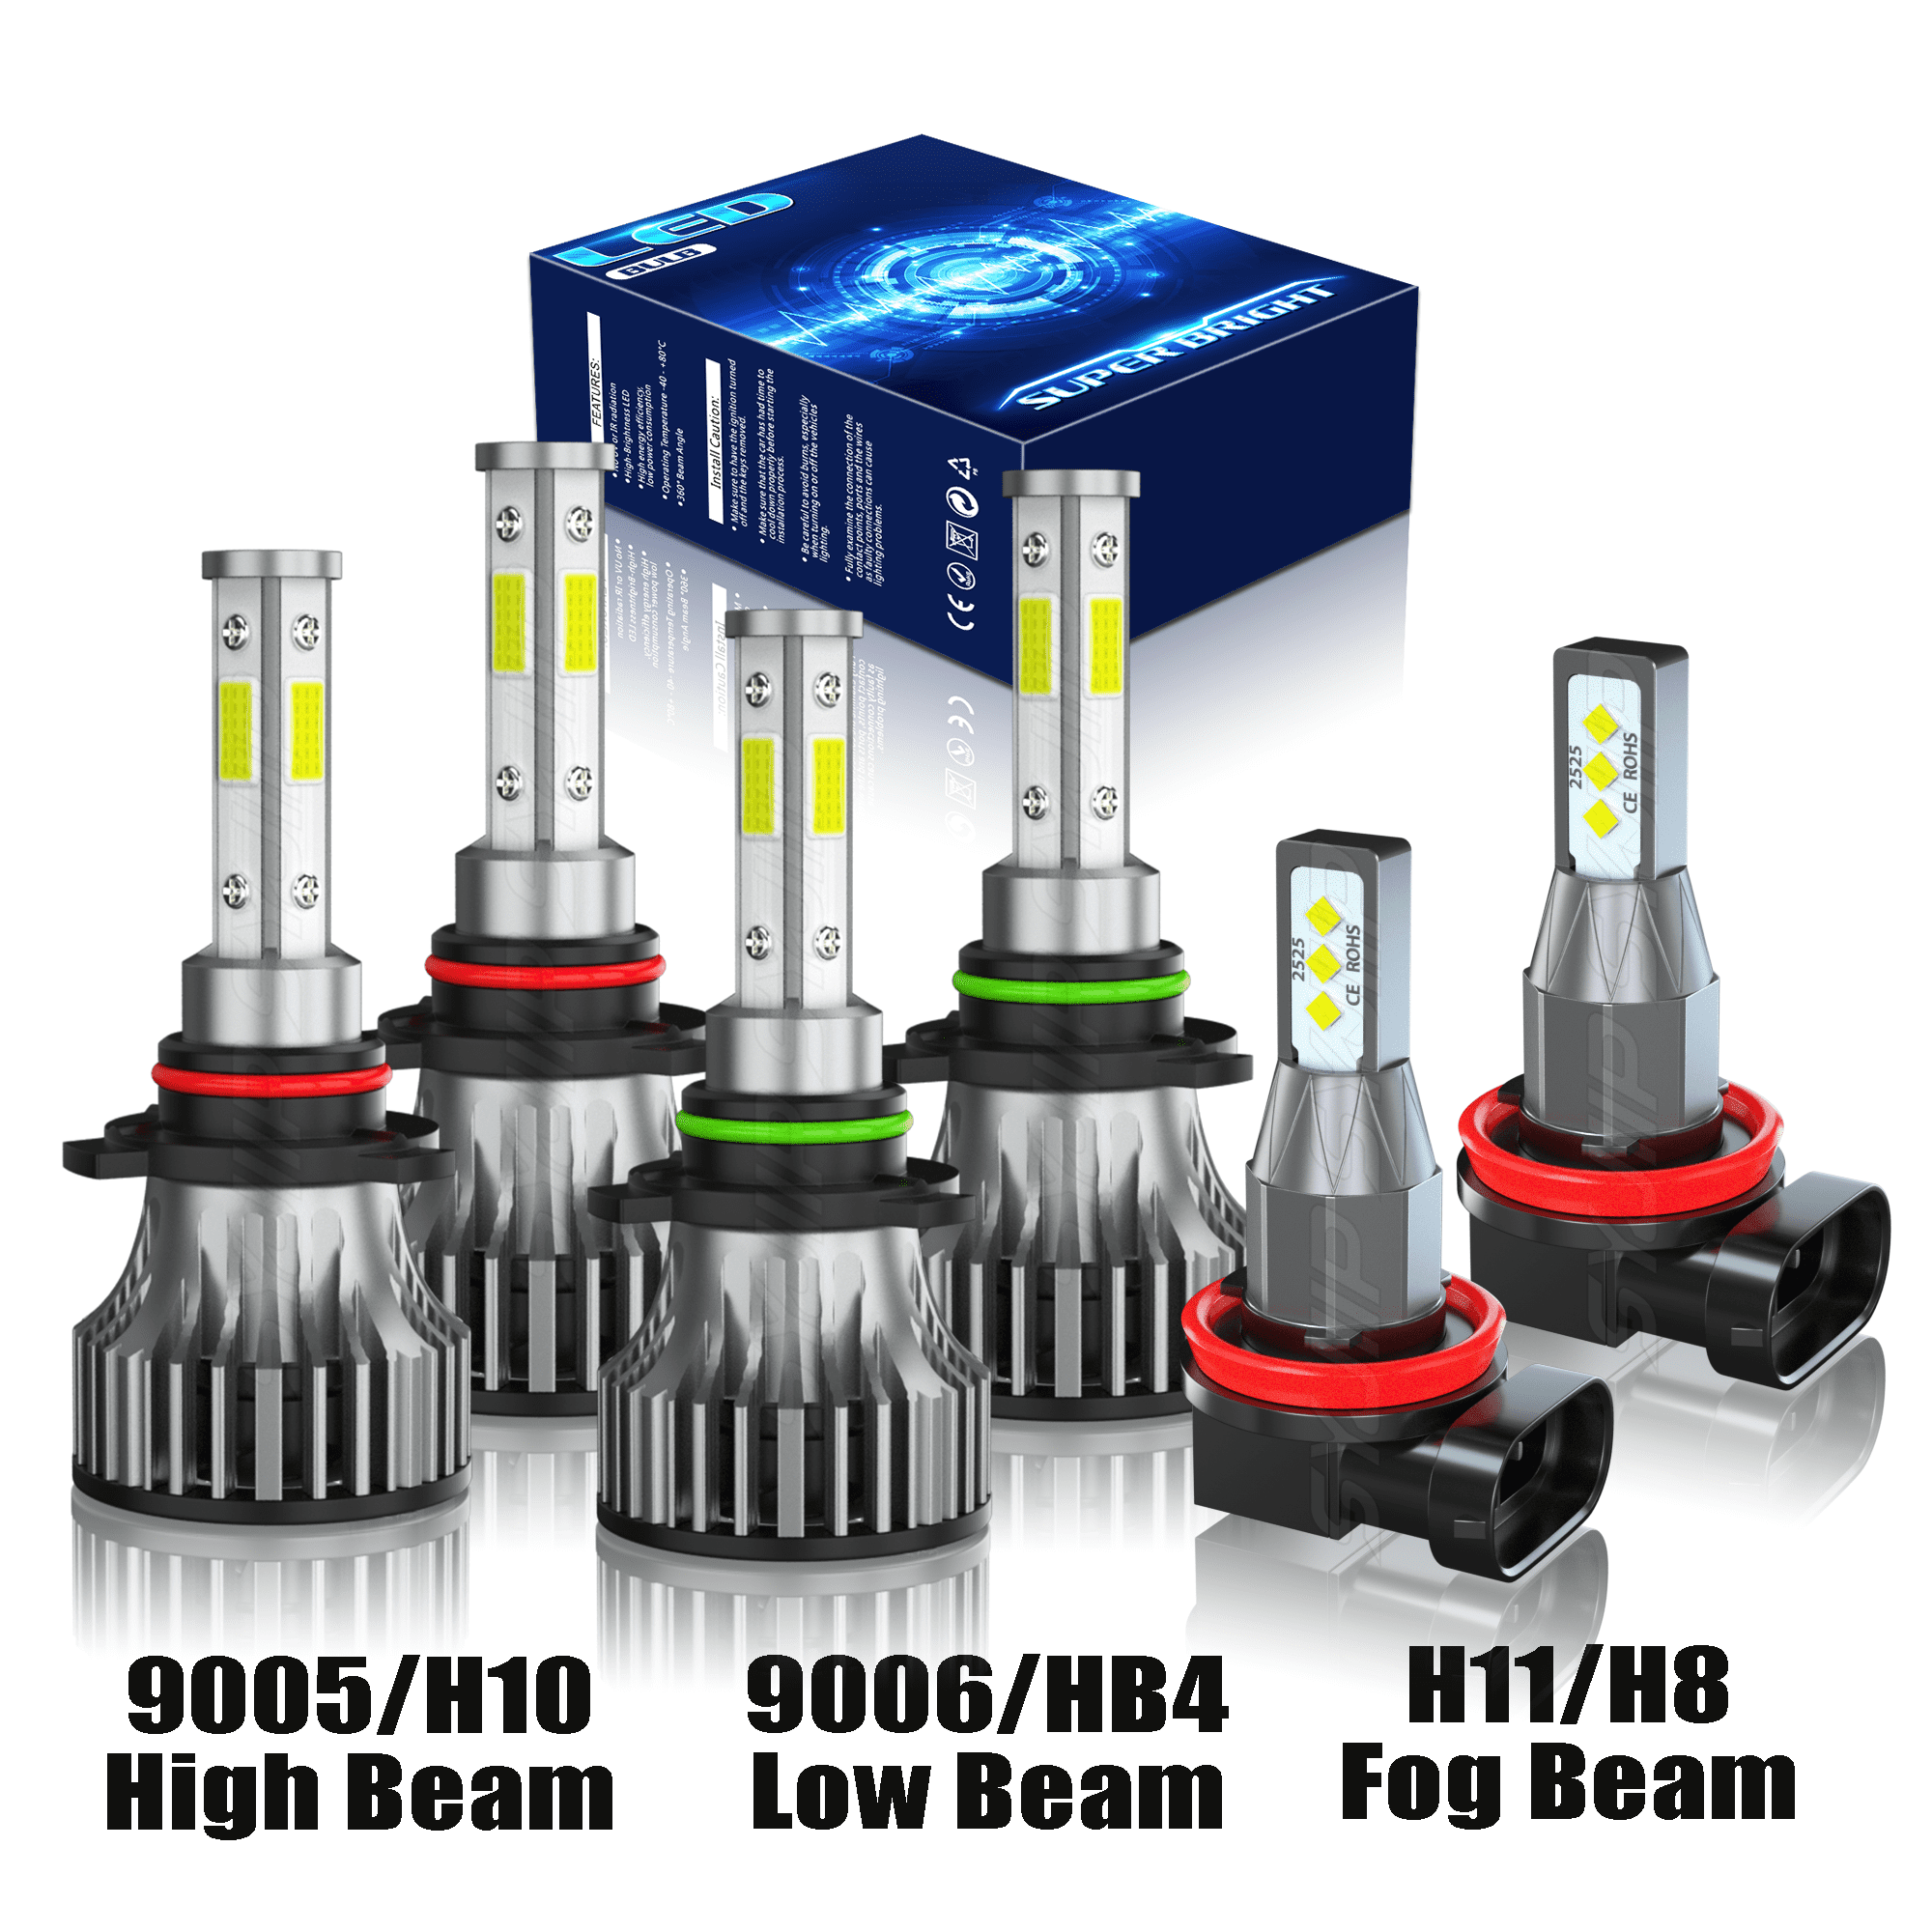 9005 9006 H11 LED Headlight Fog Light Kit High & Low Beam Bulb